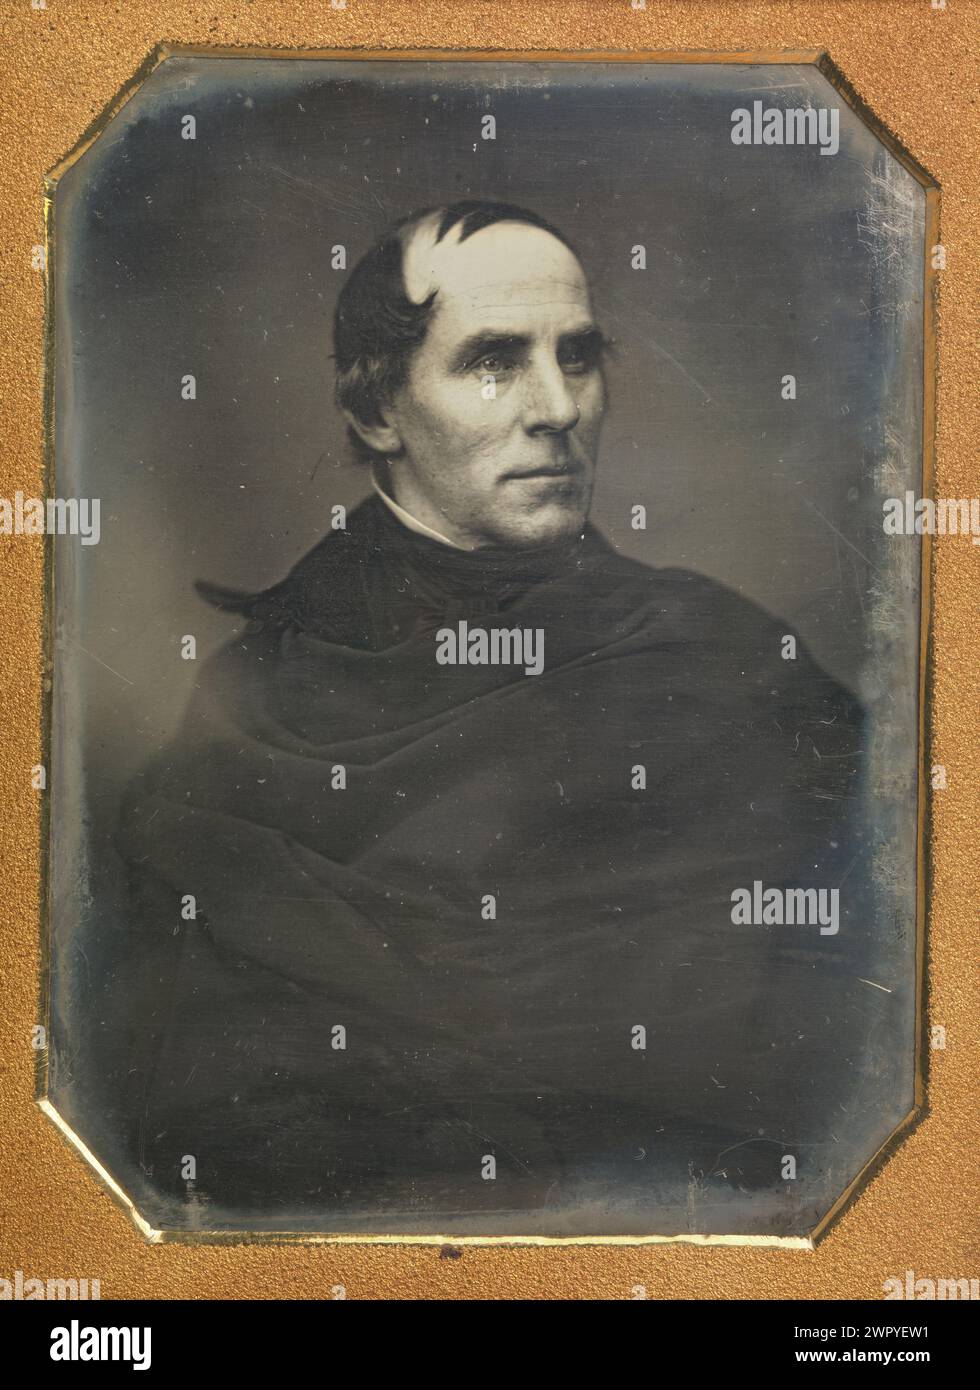 Retrato del artista estadounidense Thomas Cole (1841-1848), fundador de la Escuela de Arte del Río Hudson, daguerrotipo por Mathew B. Brady ca 1845 Foto de stock